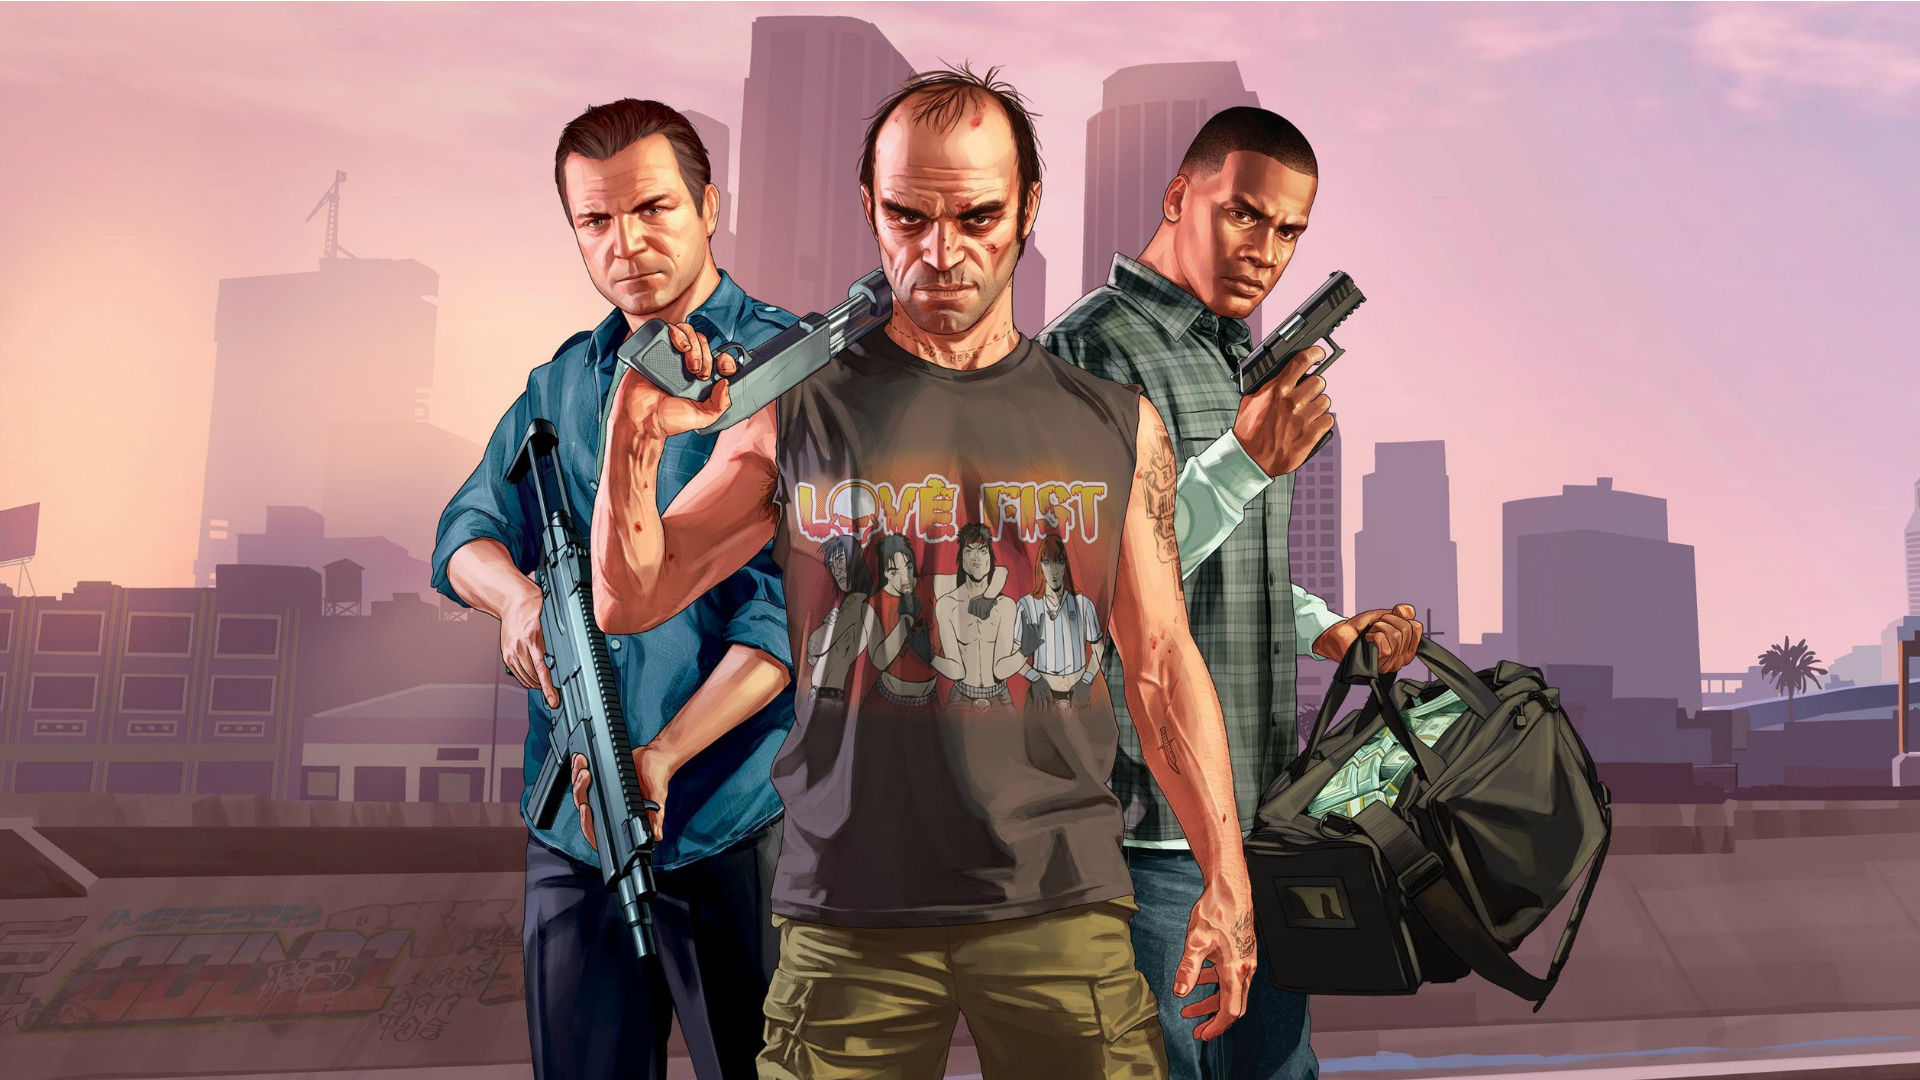 Los mejores juegos de GTA: todos los juegos de Grand Theft Auto clasificados |  Tendencias digitales